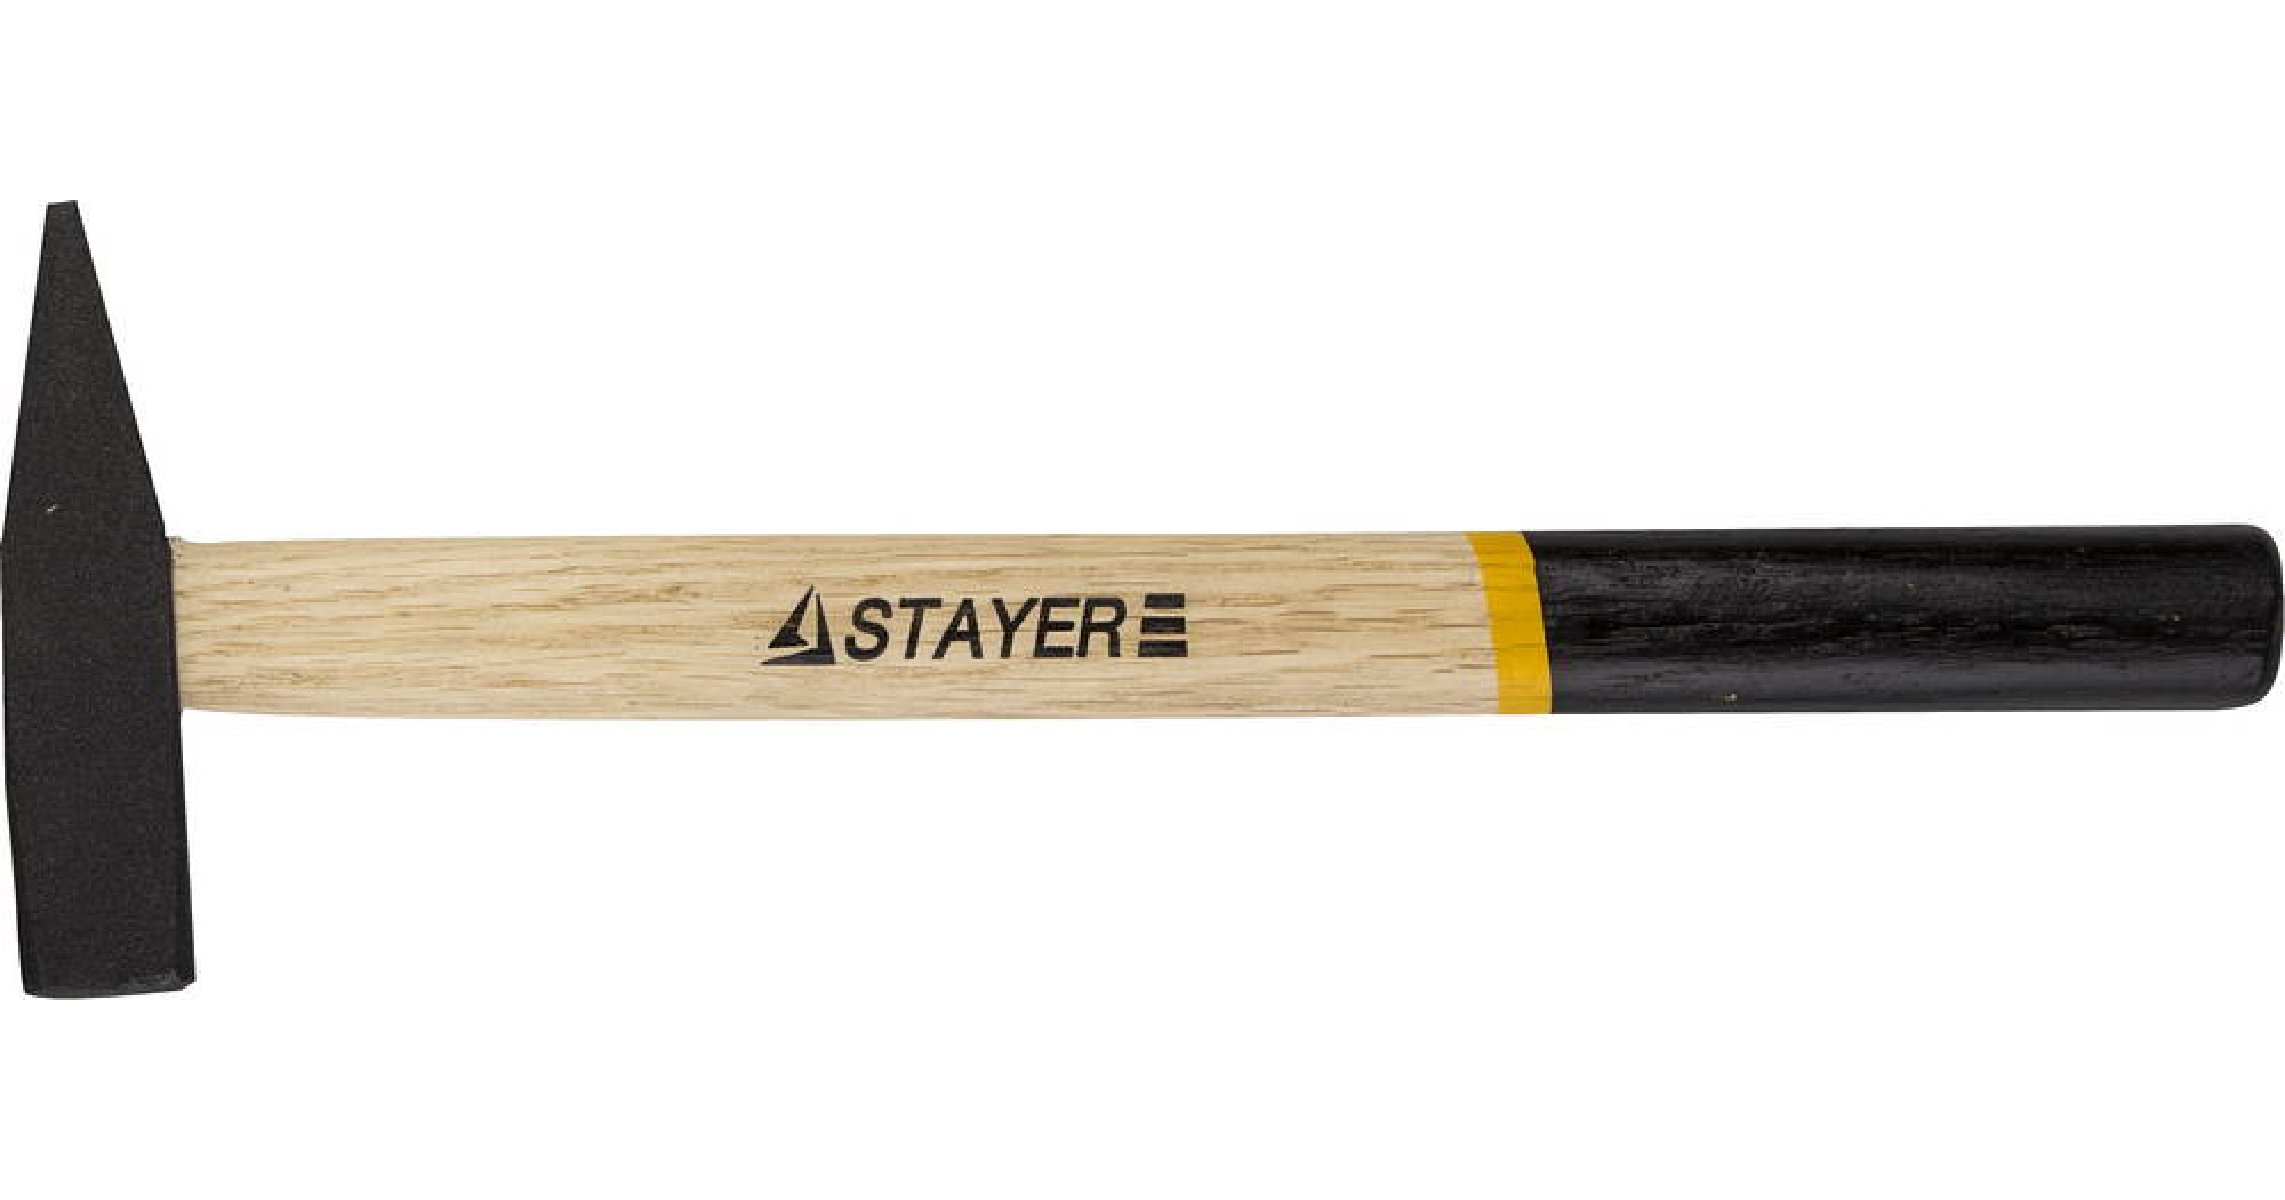   STAYER 200  (2002-02)